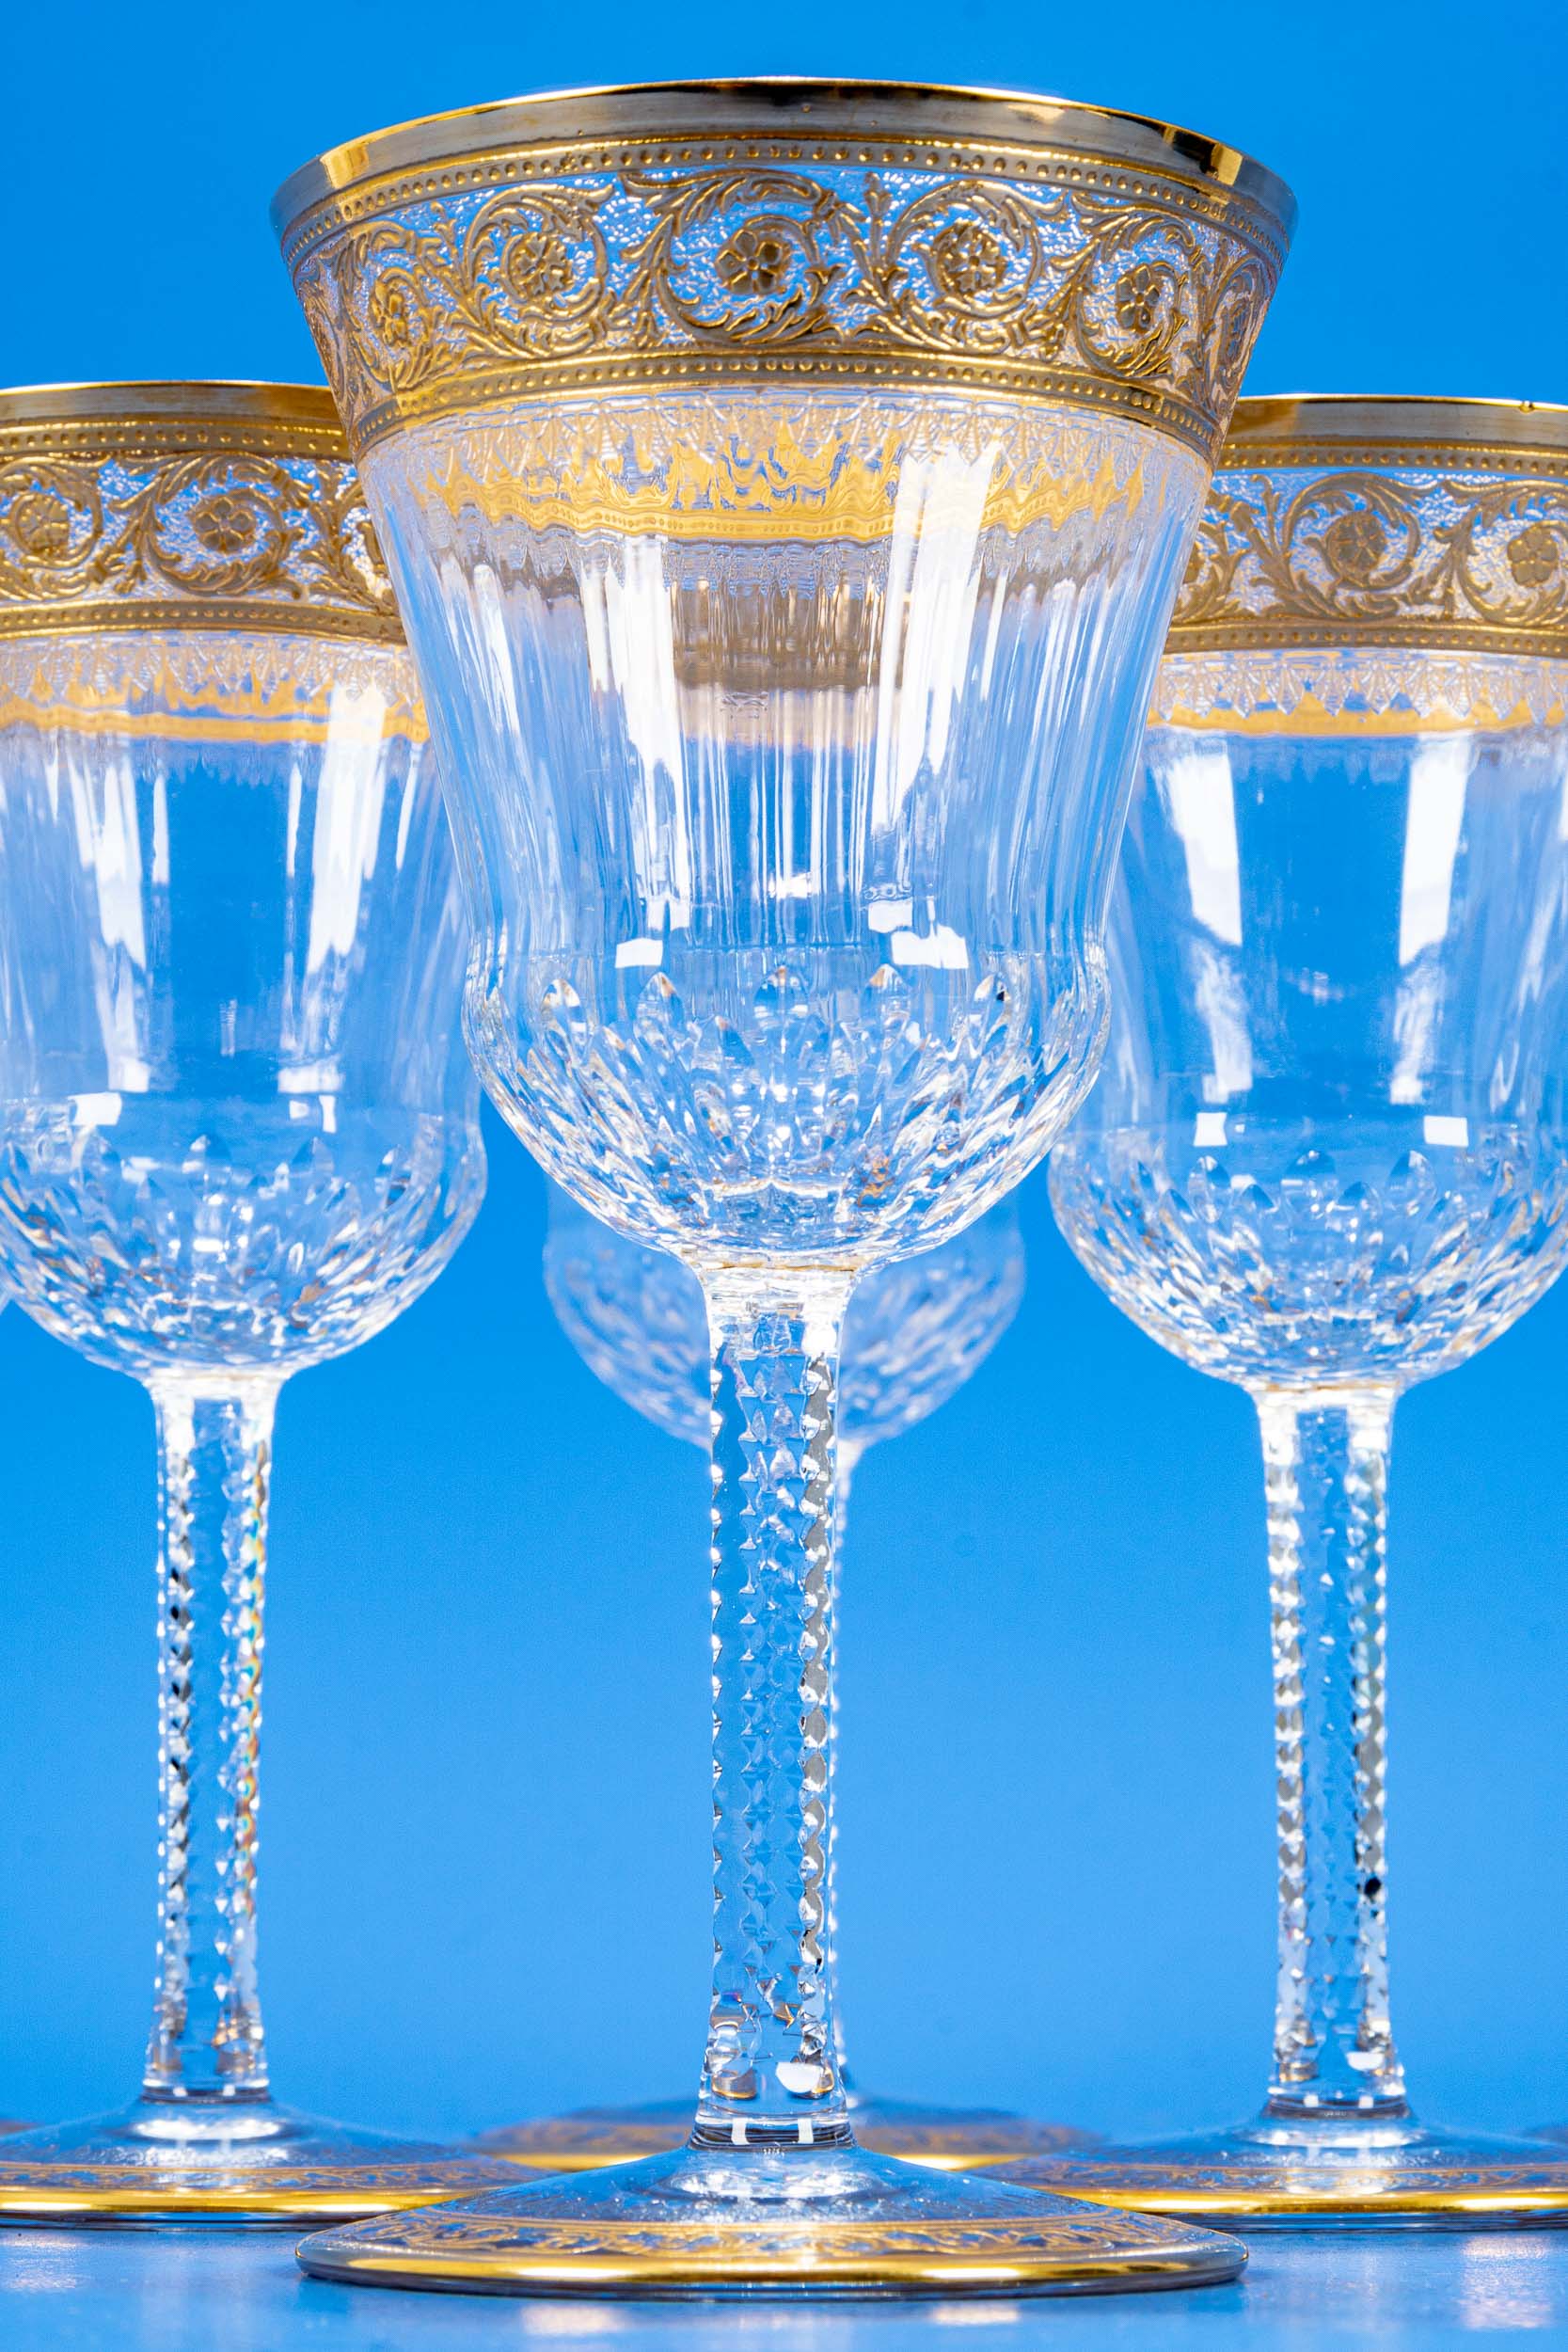 Folge von 6 edlen Weingläsern, schweres farbloses Kristallglas mit aufwändigen Gold- & Schliffdekor - Bild 4 aus 6